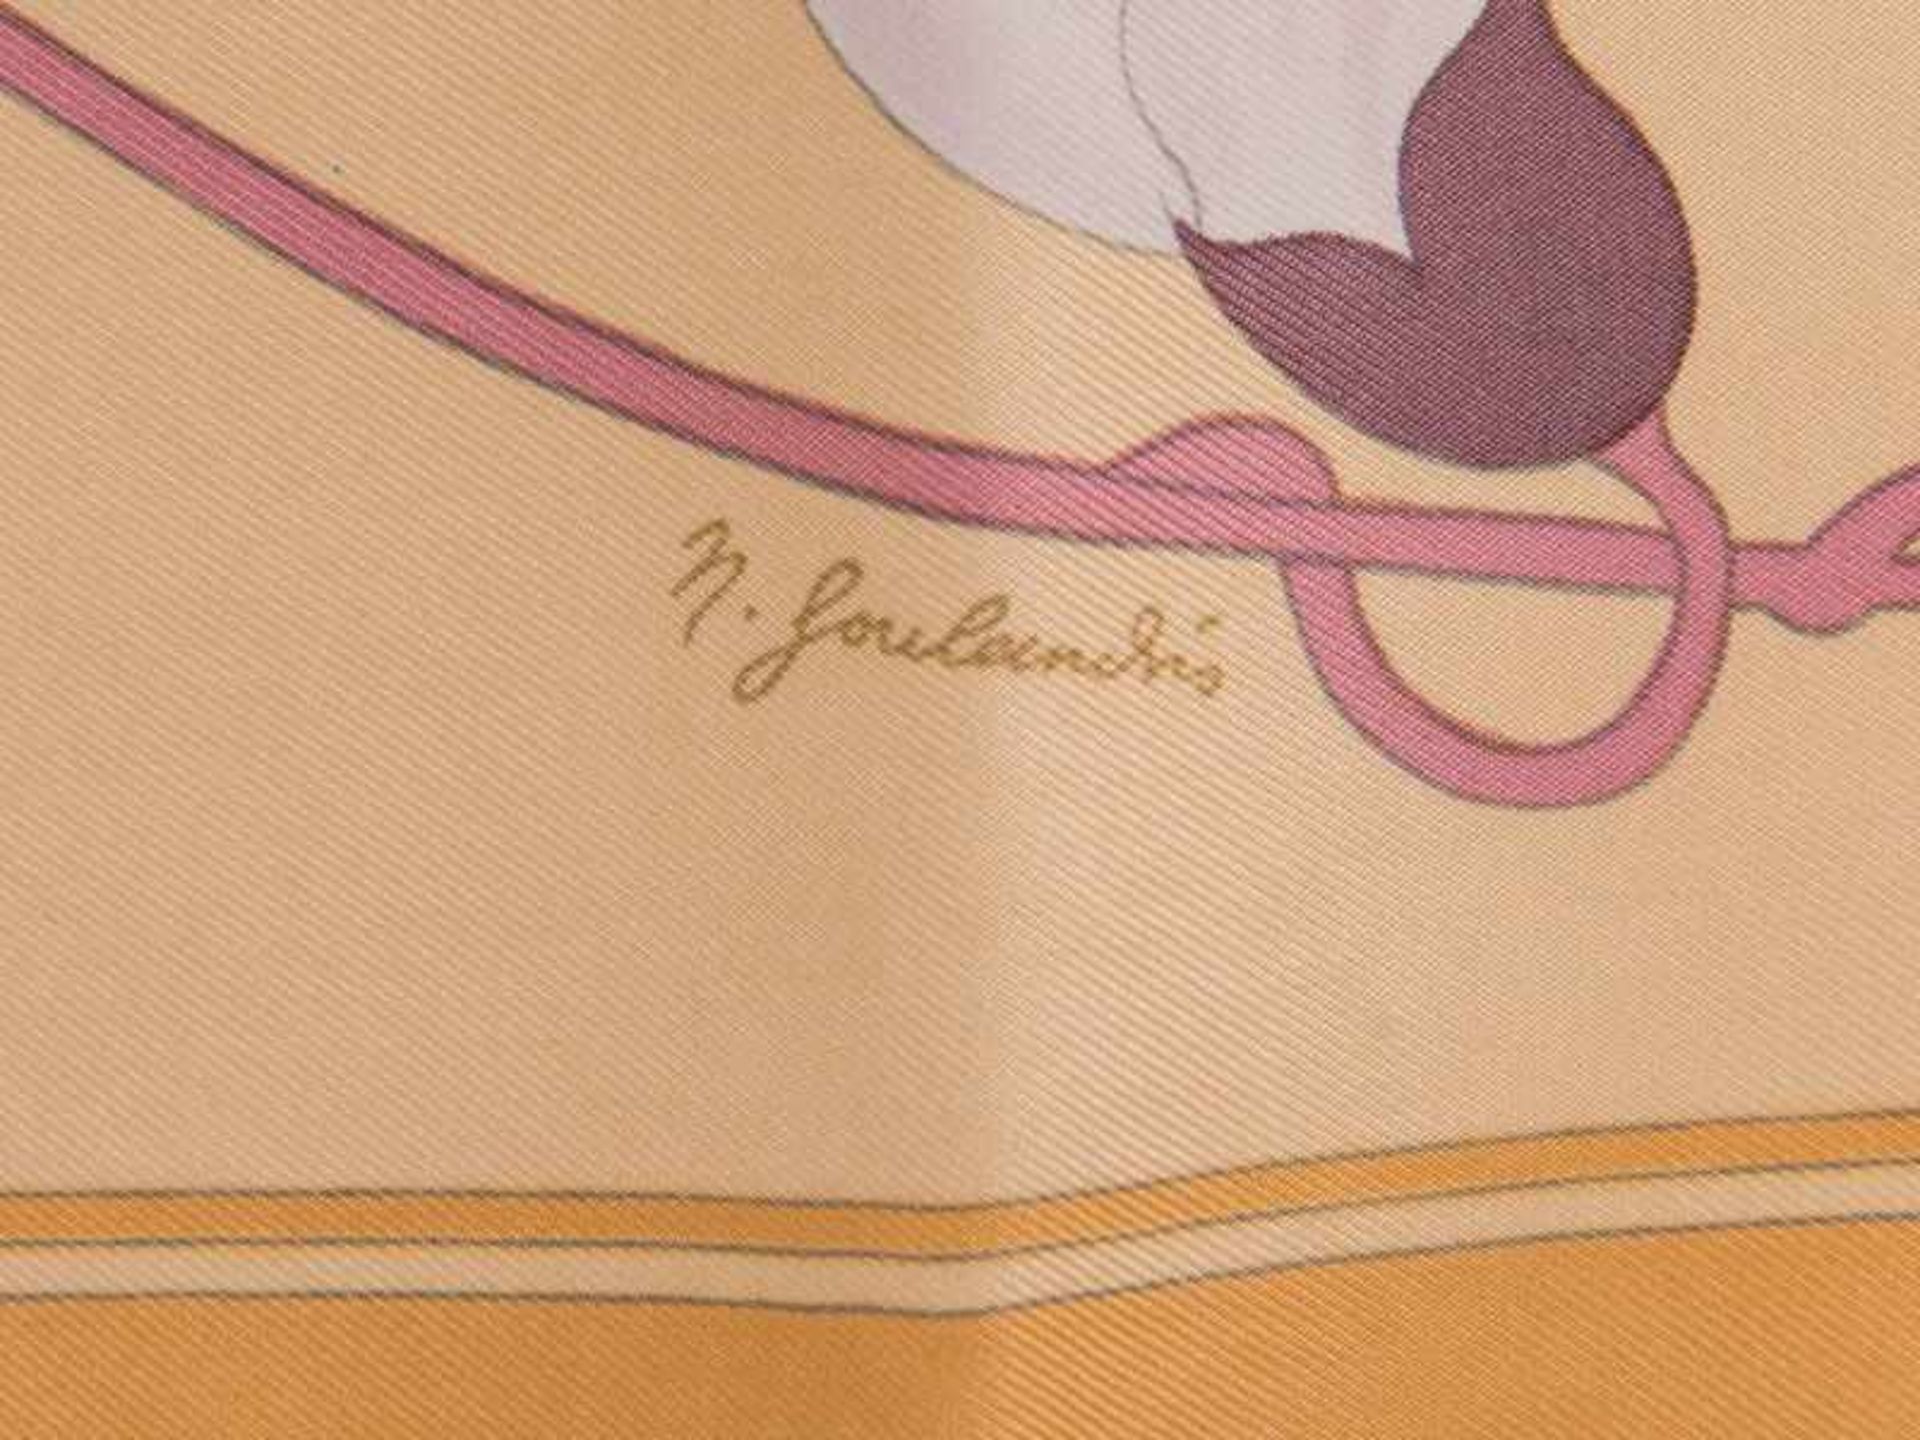 Vintage-Seidentuch von Hermès, Dekorentwurf von Niki Goulandris; Paris, 20. Jh. 100% Seide. - Bild 3 aus 3